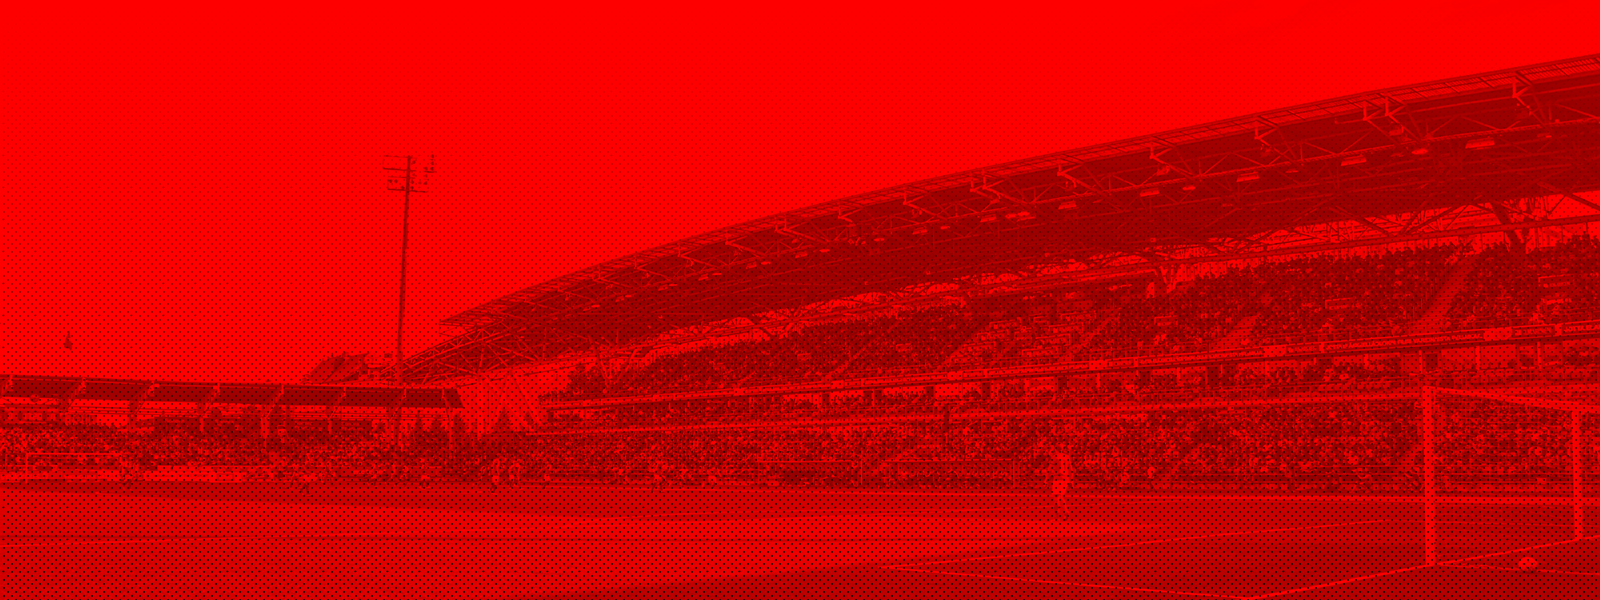 HIFK:n kausikortit myyntiin maanantaina 14.11. <br> – tietoa kausikorttien ostamisesta ja uusimisesta